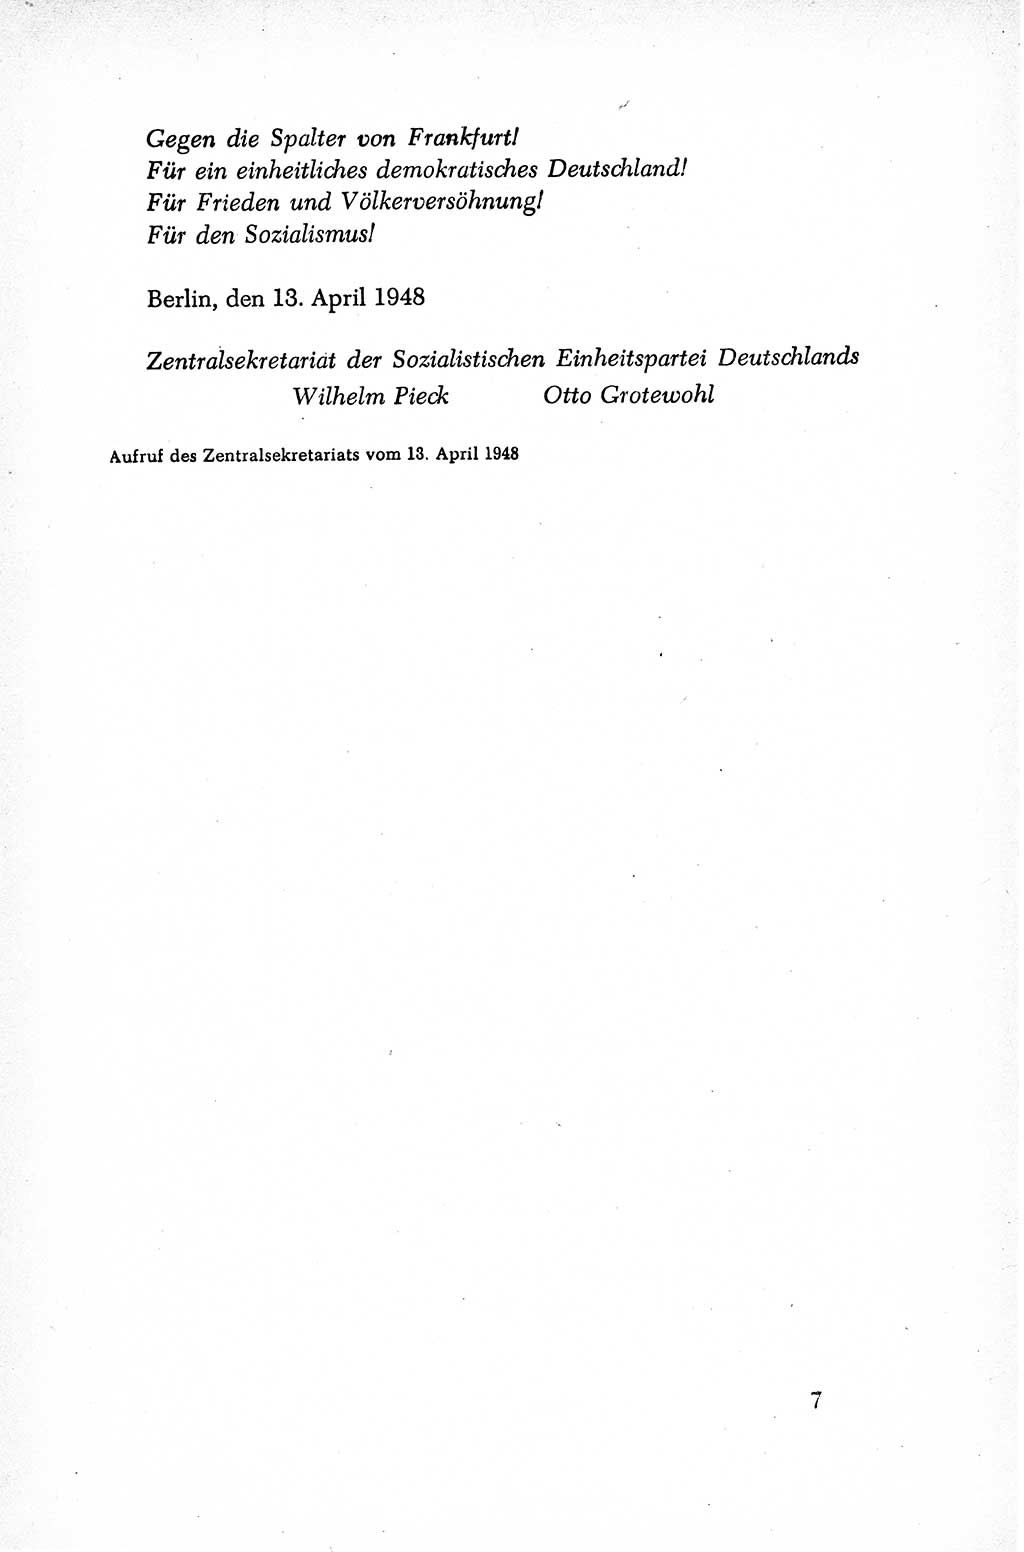 Dokumente der Sozialistischen Einheitspartei Deutschlands (SED) [Sowjetische Besatzungszone (SBZ) Deutschlands/Deutsche Demokratische Republik (DDR)] 1948-1950, Seite 7 (Dok. SED SBZ Dtl. DDR 1948-1950, S. 7)